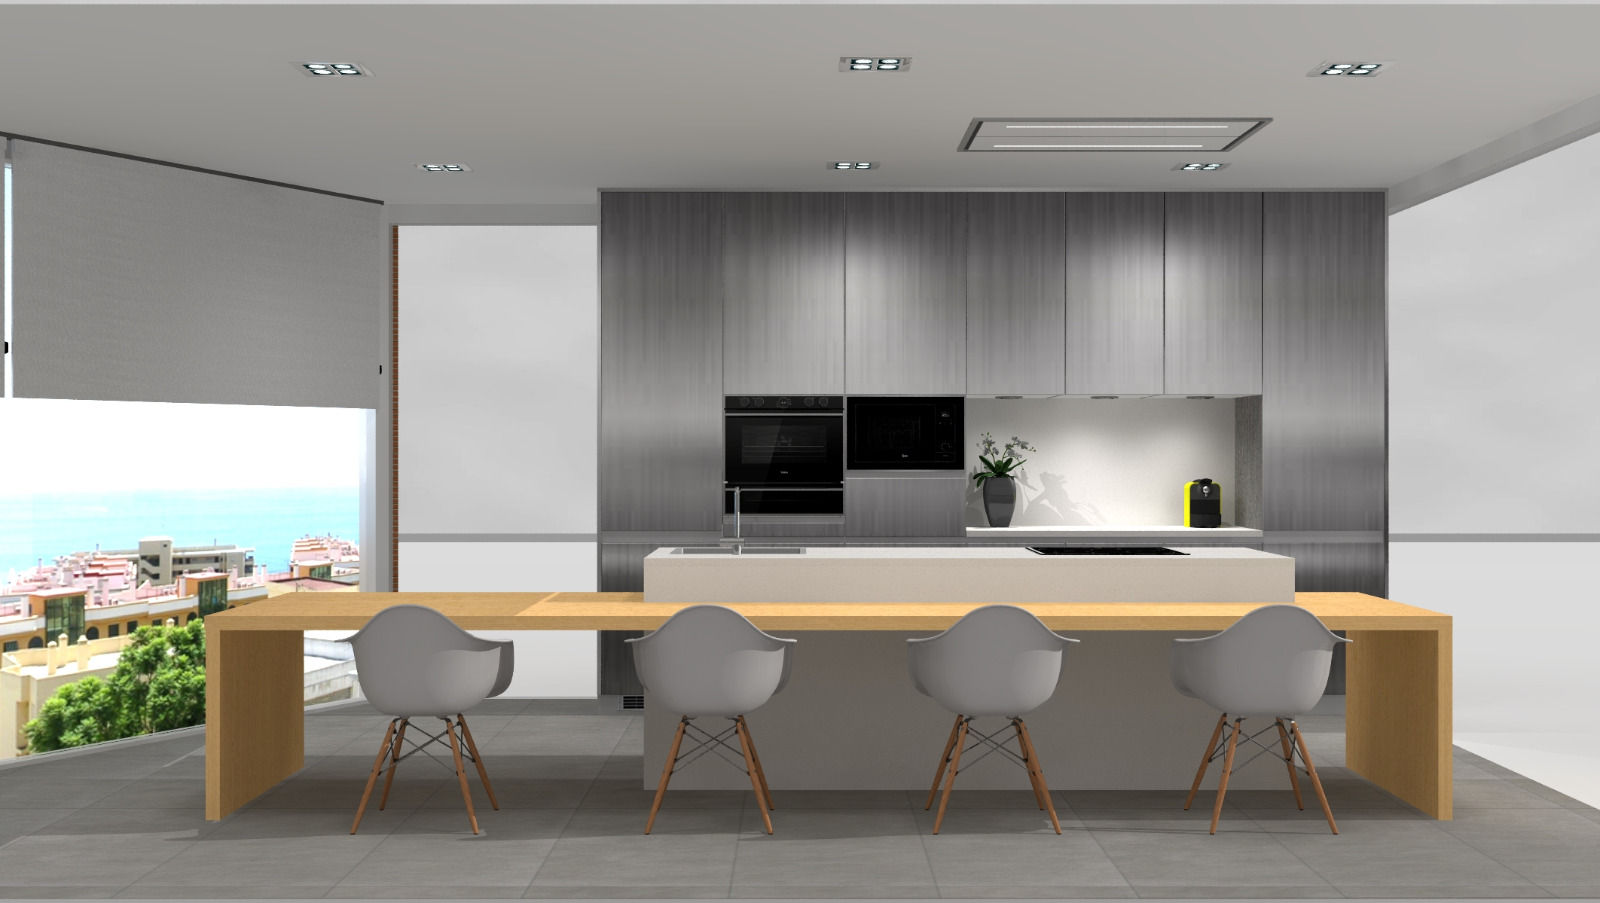 Projeto 3D para showroom de cozinhas, 7eva design - Arquitectura e Interiores 7eva design - Arquitectura e Interiores Кухня